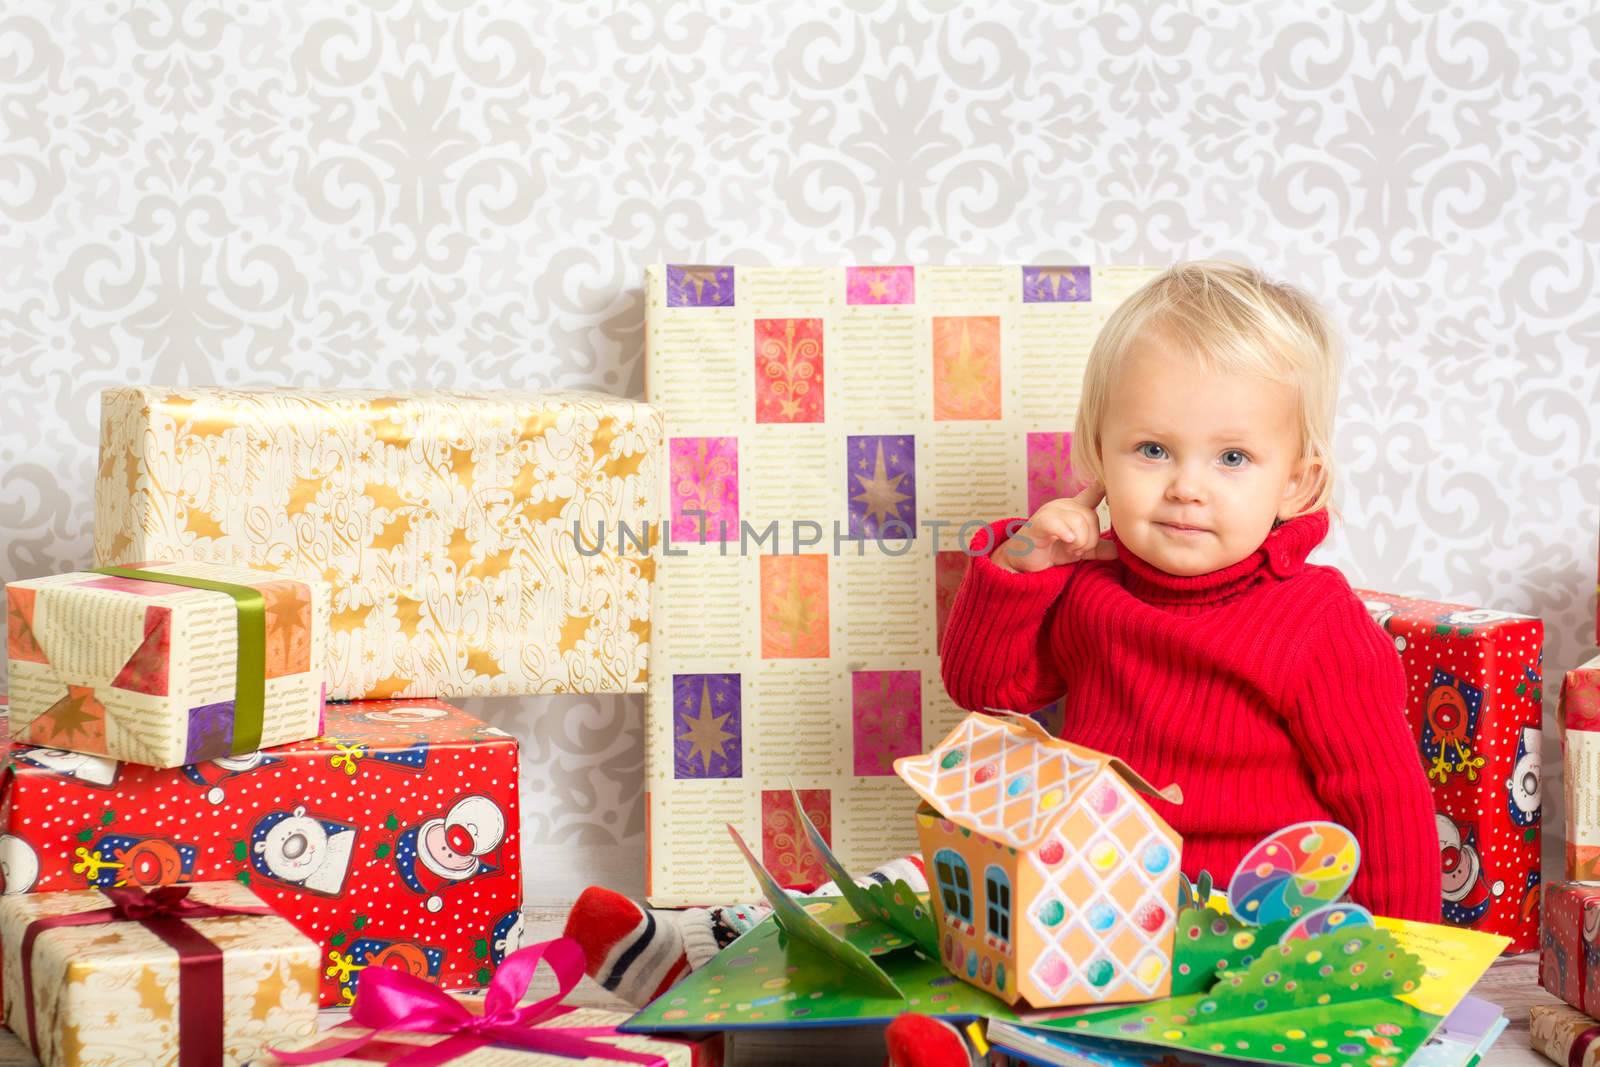 Baby girl among the christmas presents by kamsta